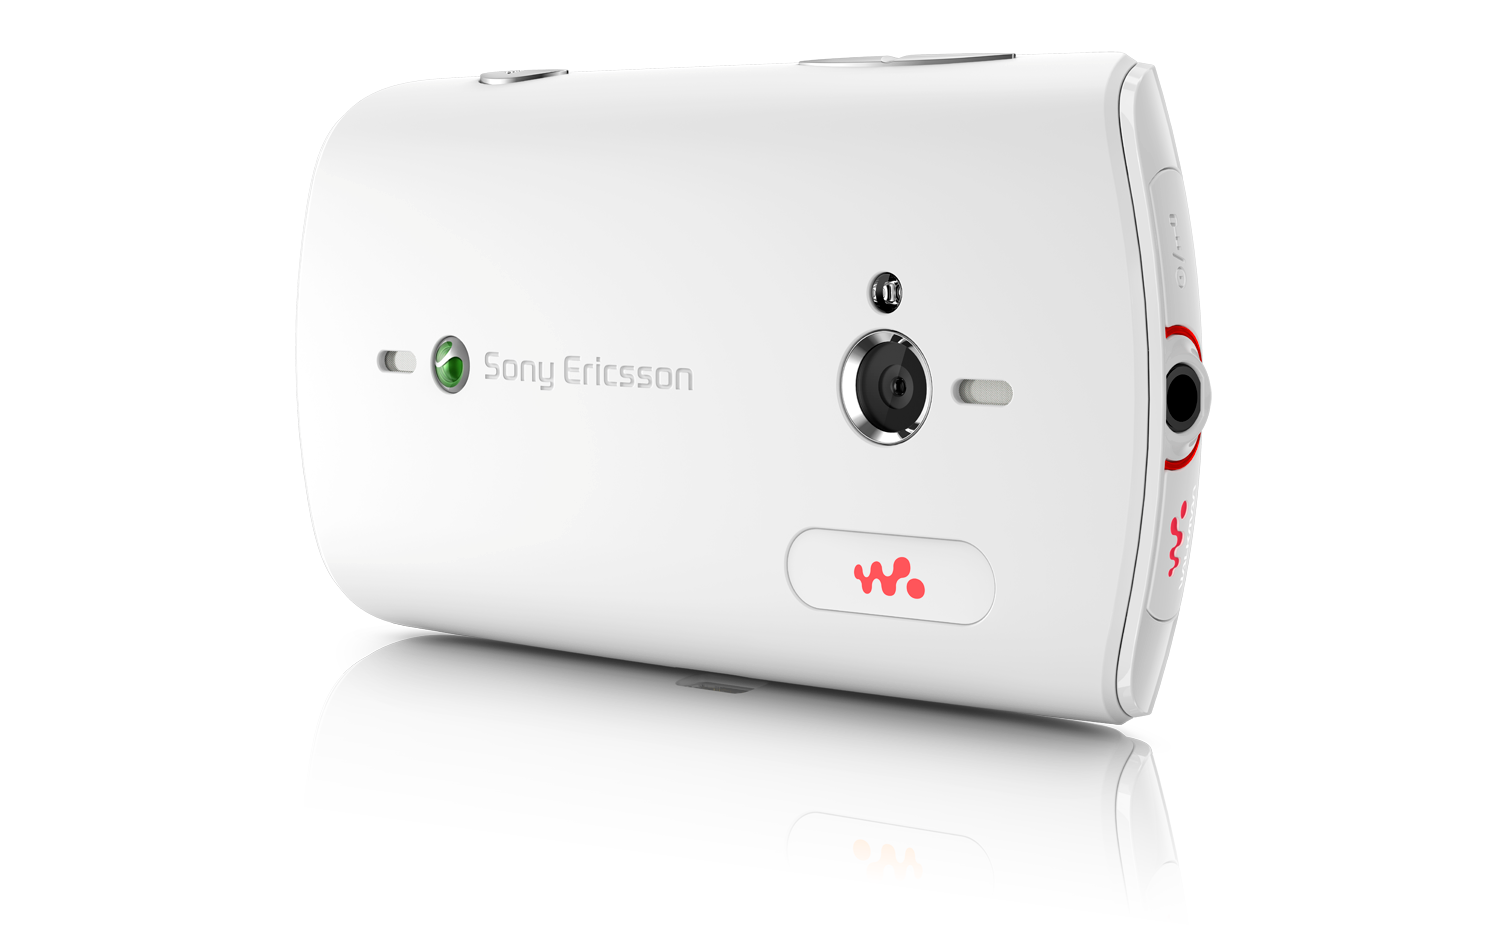 Live with Walkman er en Android-basert musikktelefon fra Sony Ericsson.